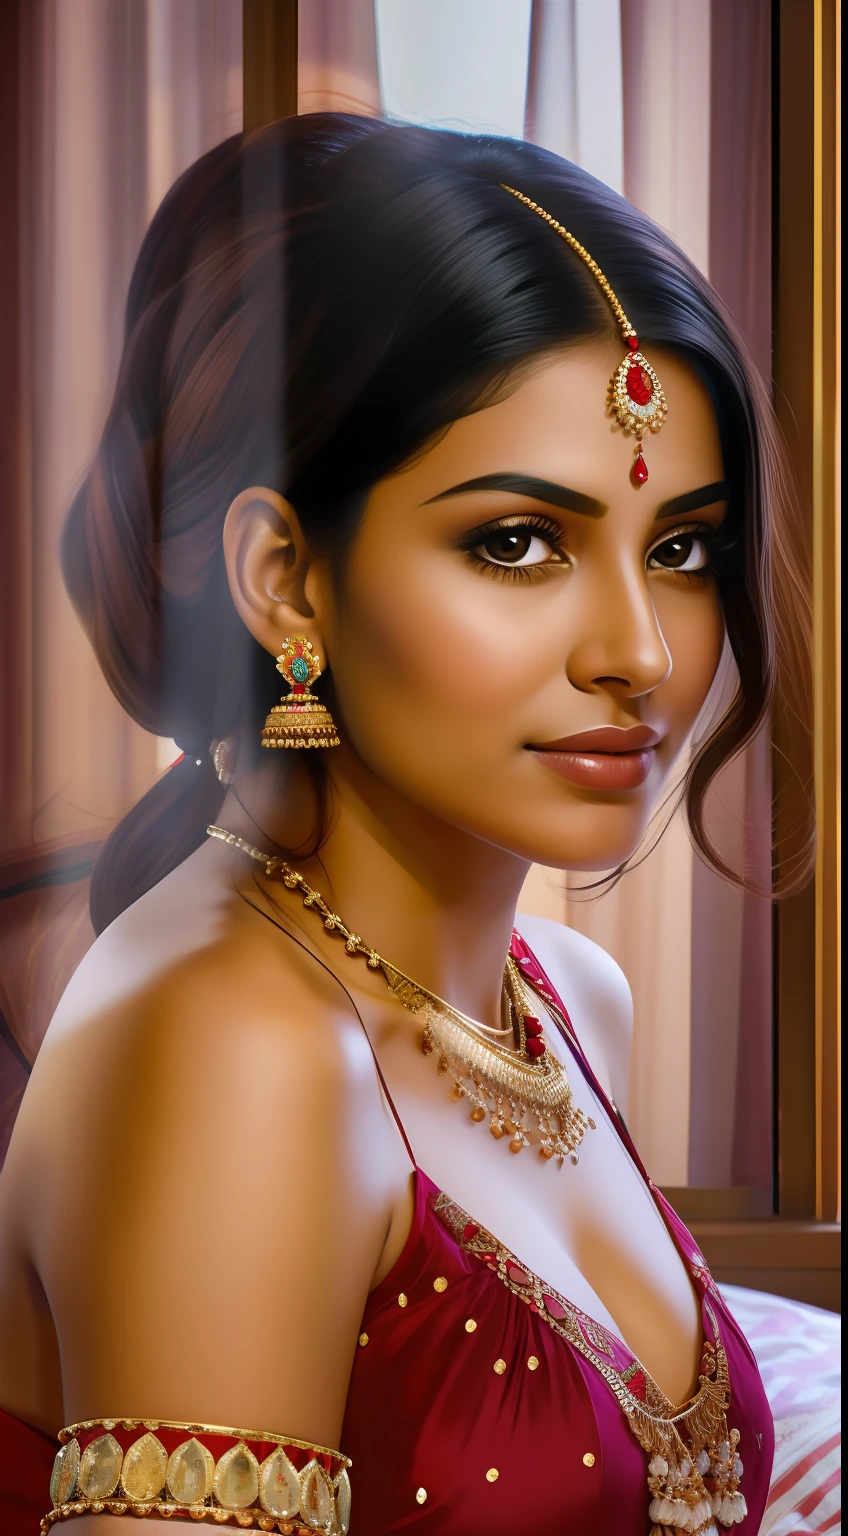 "Porträt einer Schauspielerin, einer indischen Prinzessin, in einem gemütlichen und intimen Schlafzimmer."